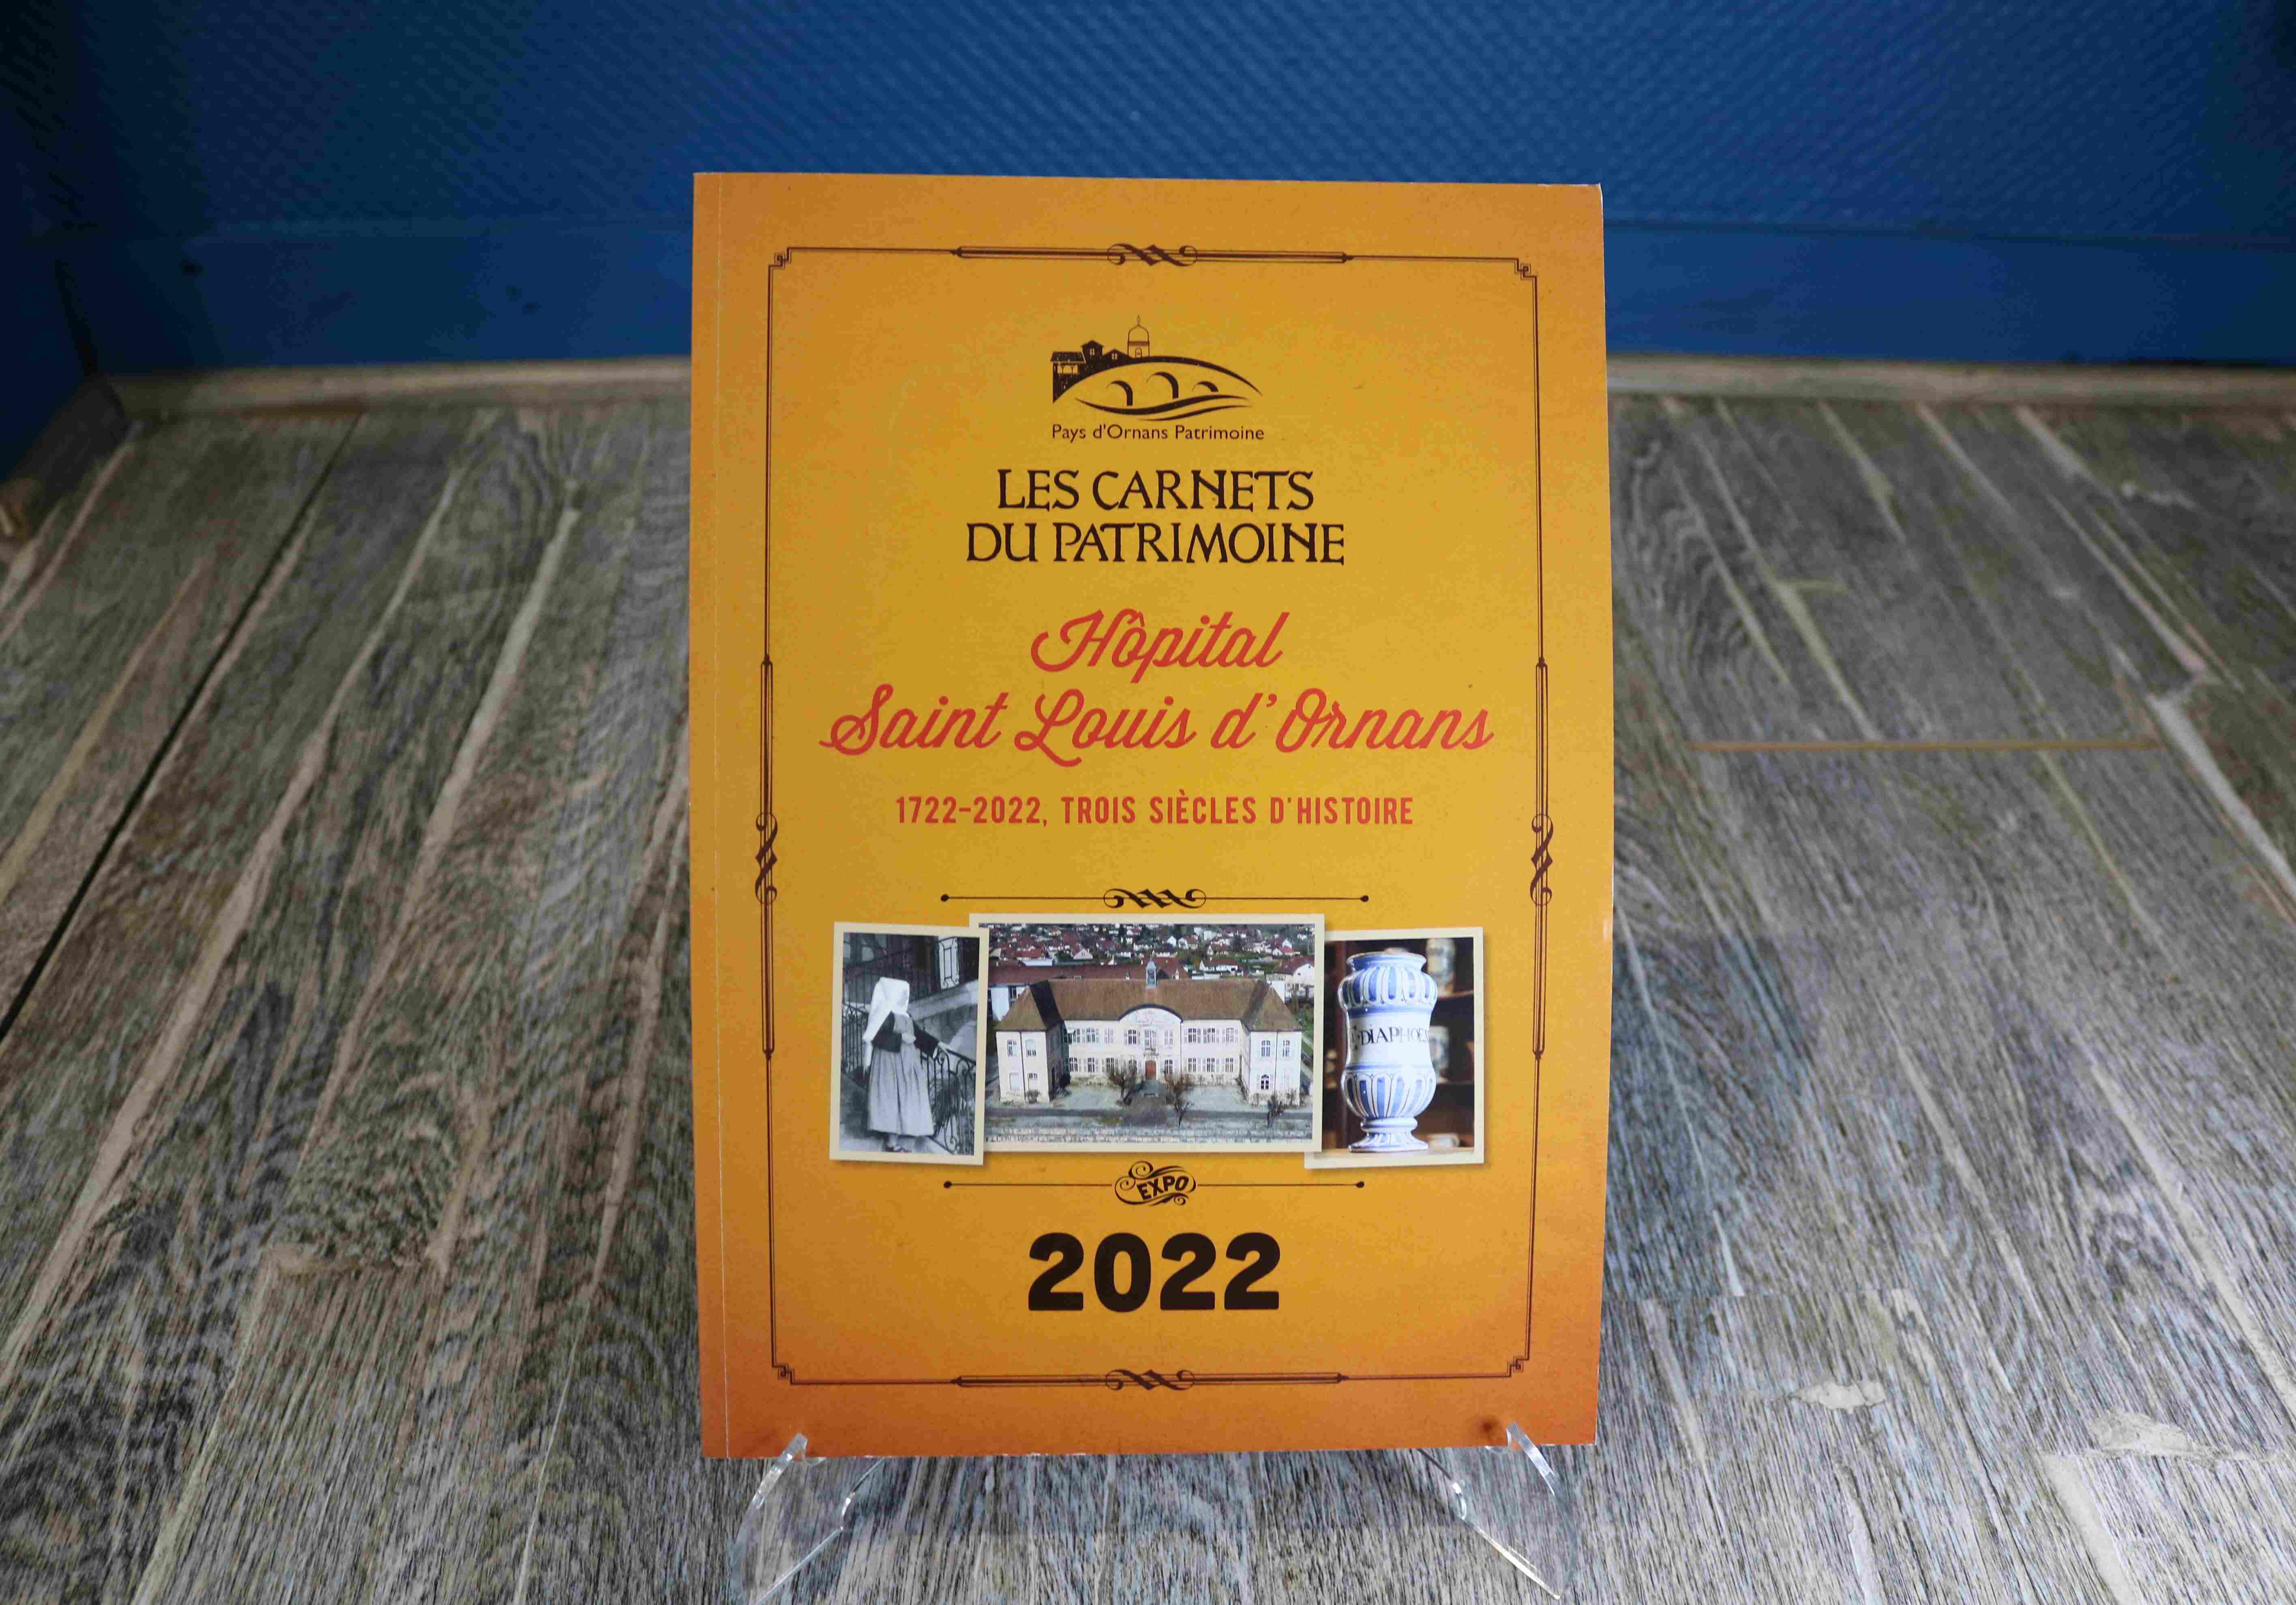 Ouvrage "Les Carnets du Patrimoine - Hôpital Saint Louis d'Ornans 2022" - Association Pays d'Ornans Patrimoine